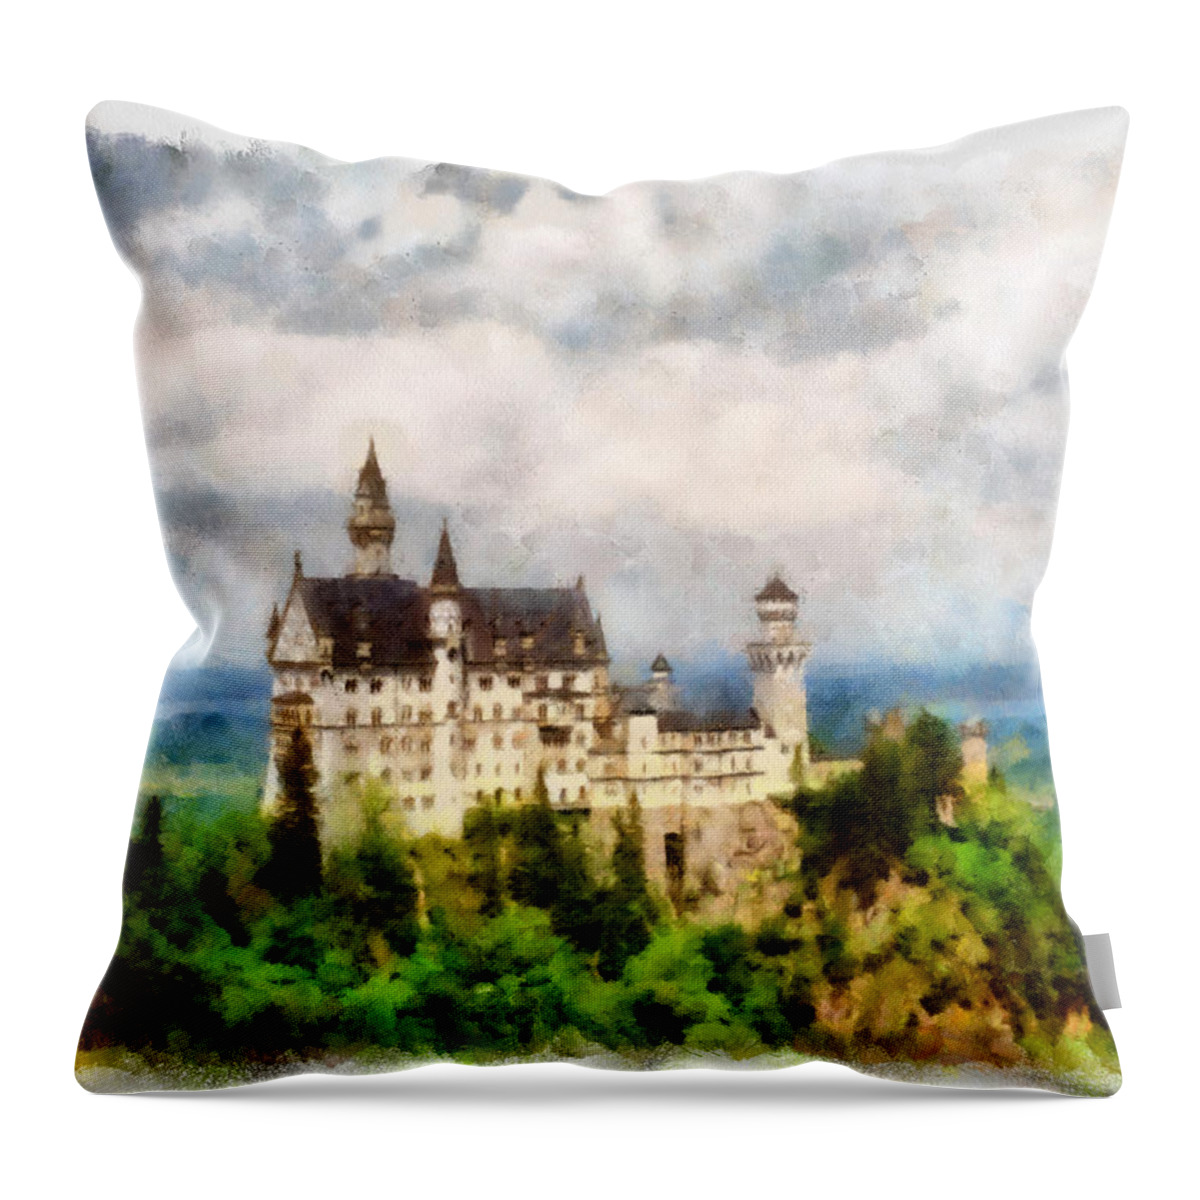 Neuschwanstein Throw Pillow featuring the photograph Neuschwanstein Castle Bavaria Germany by Michelle Calkins